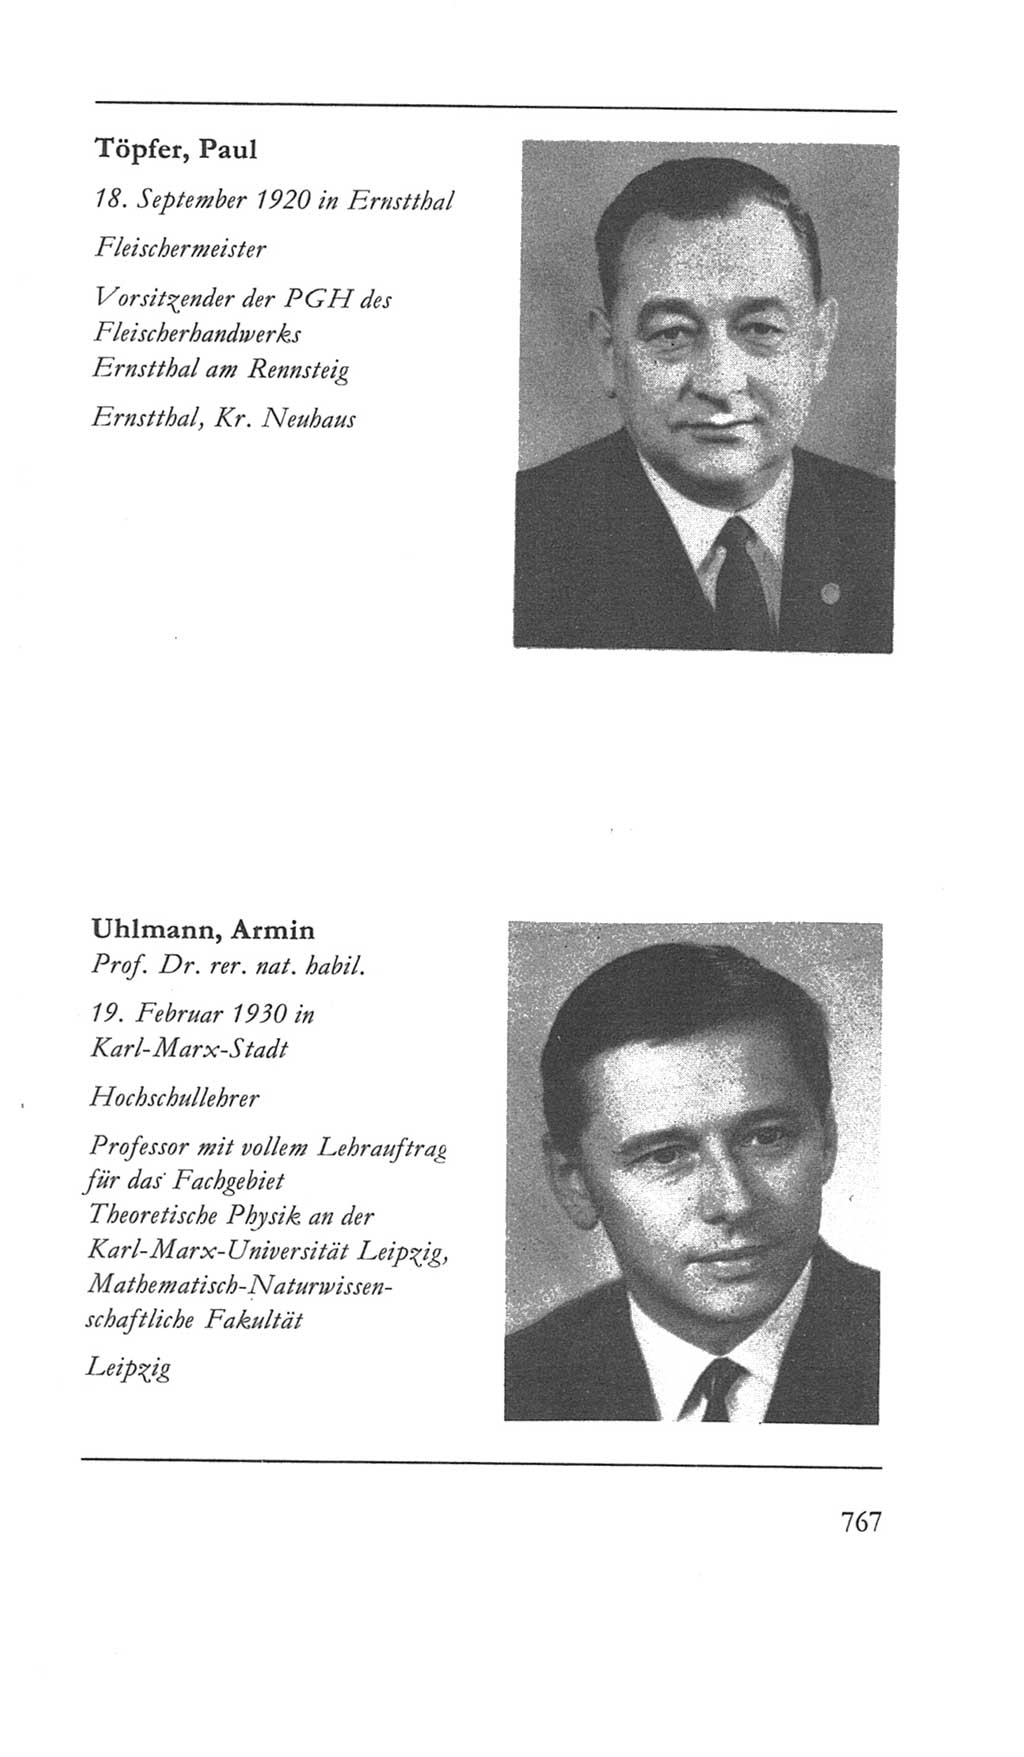 Volkskammer (VK) der Deutschen Demokratischen Republik (DDR) 5. Wahlperiode 1967-1971, Seite 767 (VK. DDR 5. WP. 1967-1971, S. 767)